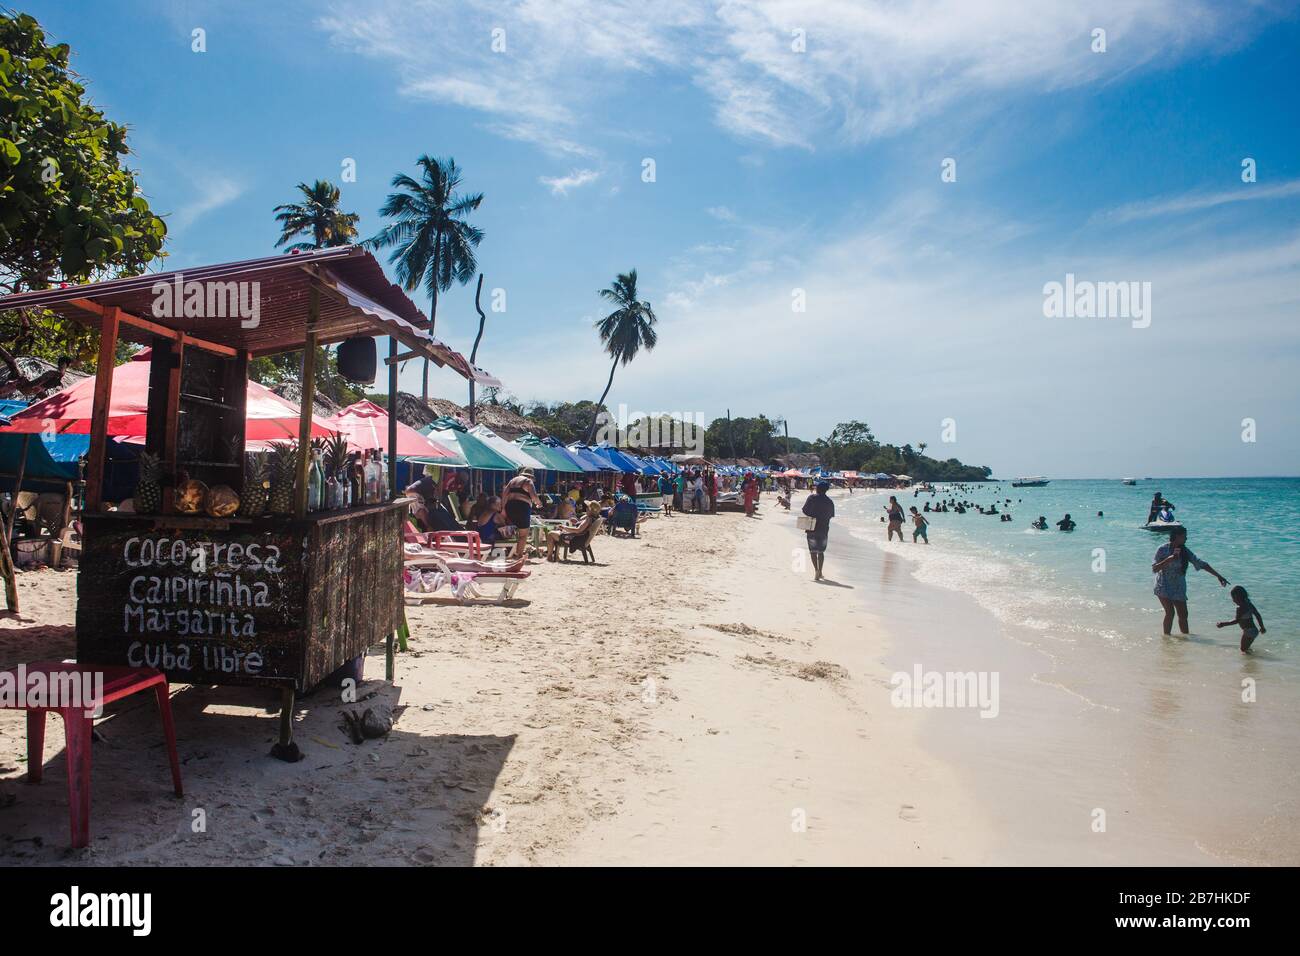 Étals à cocktails et chaises longues sur la plage animée de sable blanc et les eaux turquoise de l'île de Baru au large de la côte des Caraïbes de Carthagène, Colombie Banque D'Images